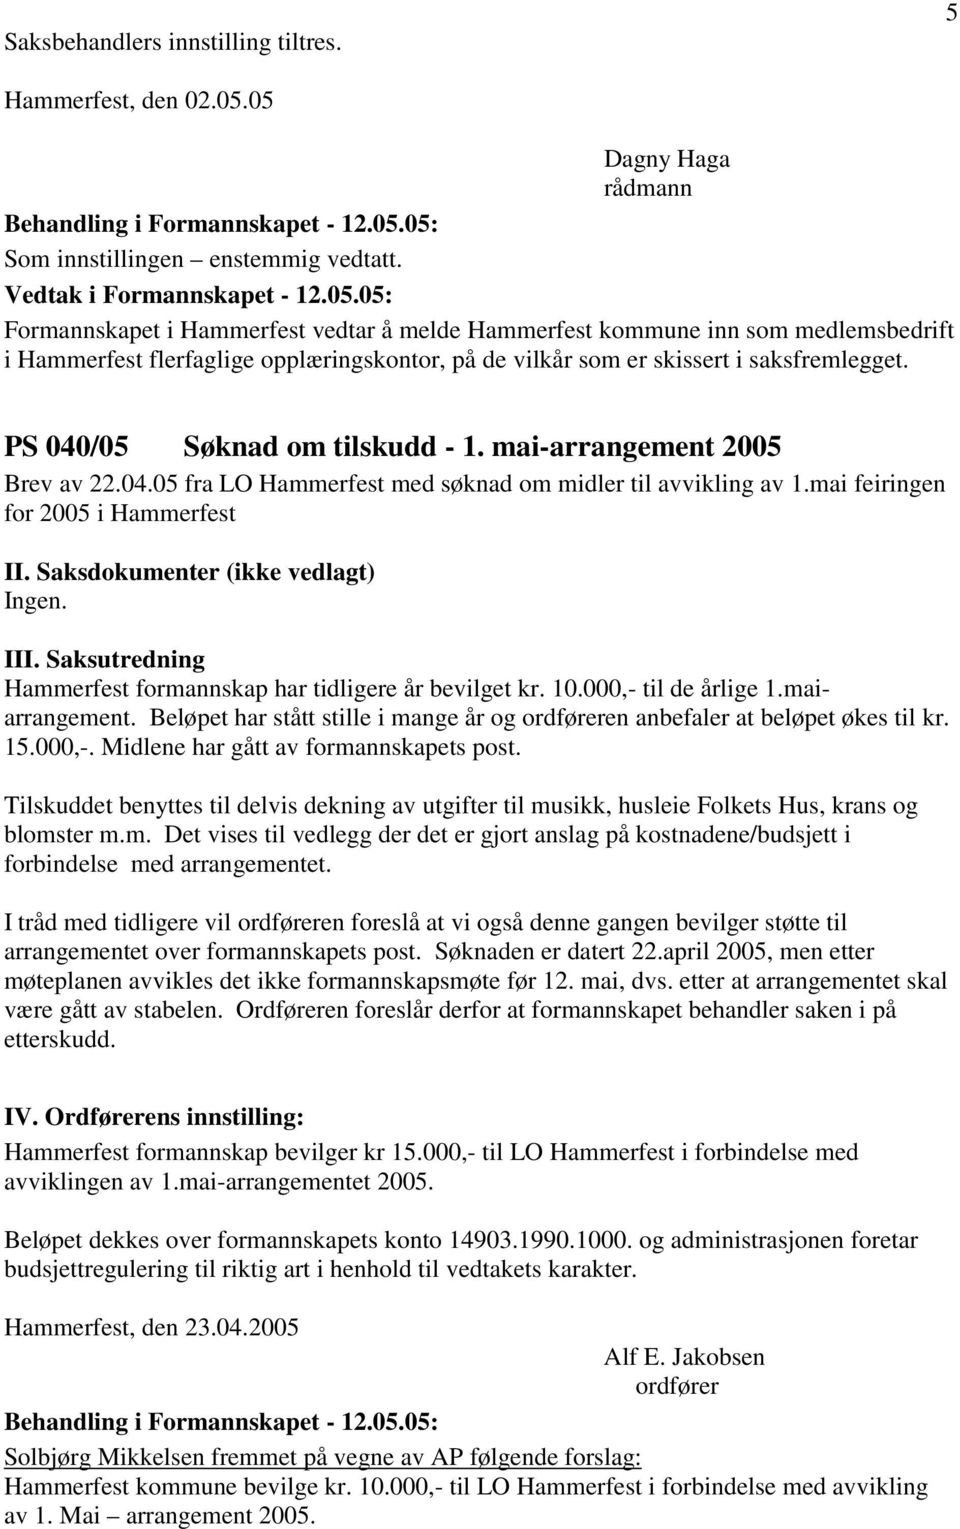 PS 040/05 Søknad om tilskudd - 1. mai-arrangement 2005 Brev av 22.04.05 fra LO Hammerfest med søknad om midler til avvikling av 1.mai feiringen for 2005 i Hammerfest II.